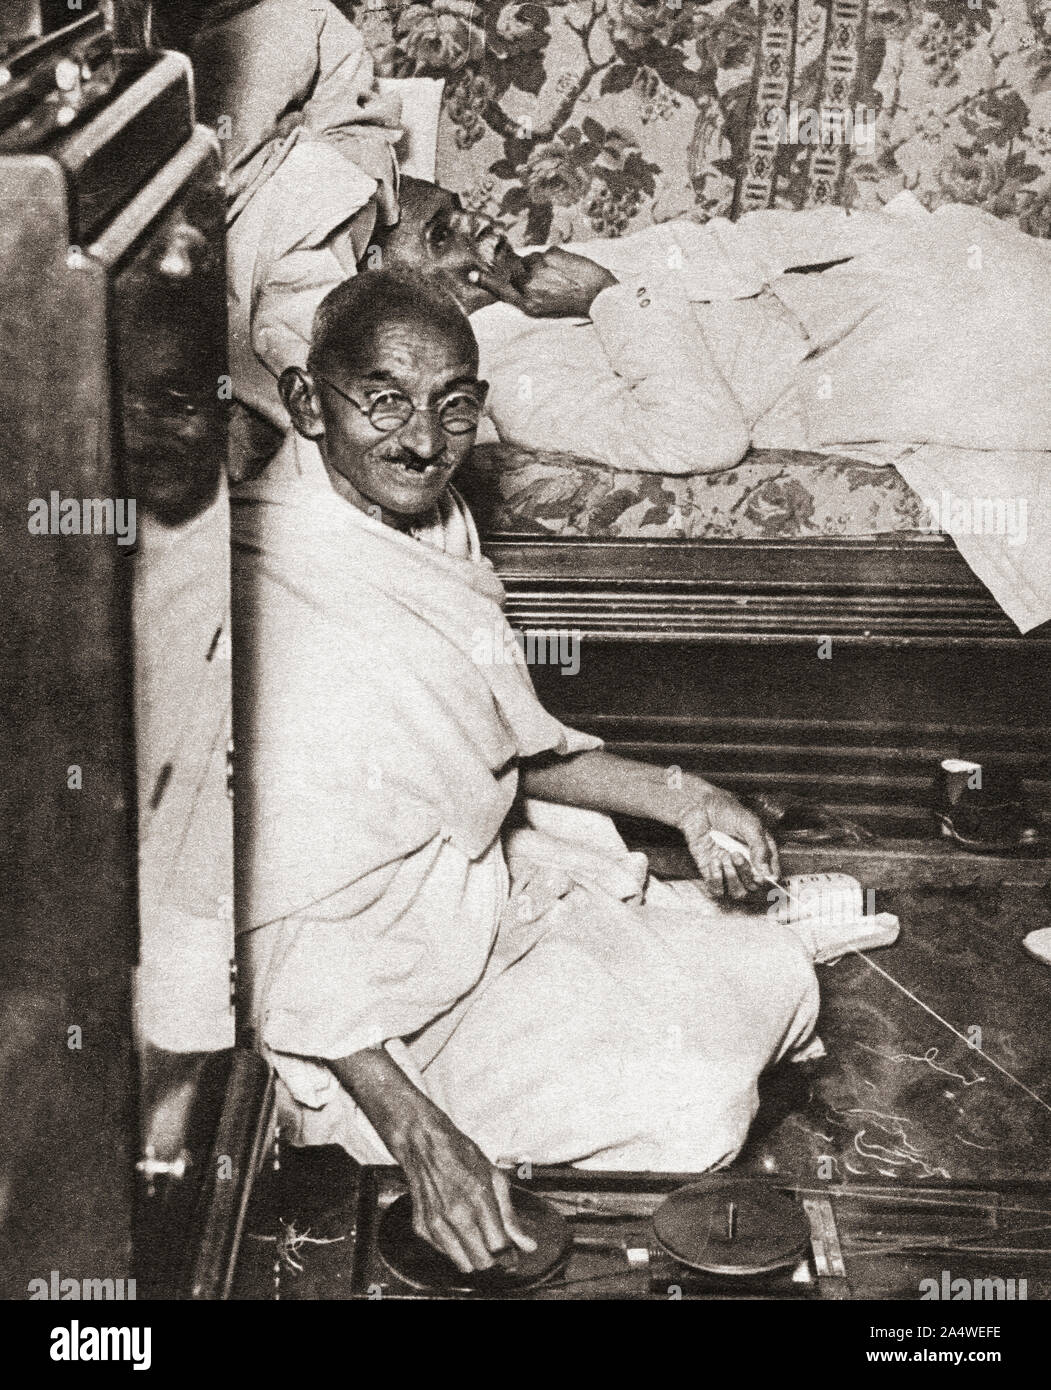 Mohandas Karamchand Gandhi, dit le Mahatma Gandhi, 1869 - 1948. Activiste indien, leader du mouvement pour l'indépendance de l'Inde contre la domination britannique. Vu ici à la Conférence de la Table Ronde, 1931. À partir de la cérémonie du siècle, publié en 1934. Banque D'Images